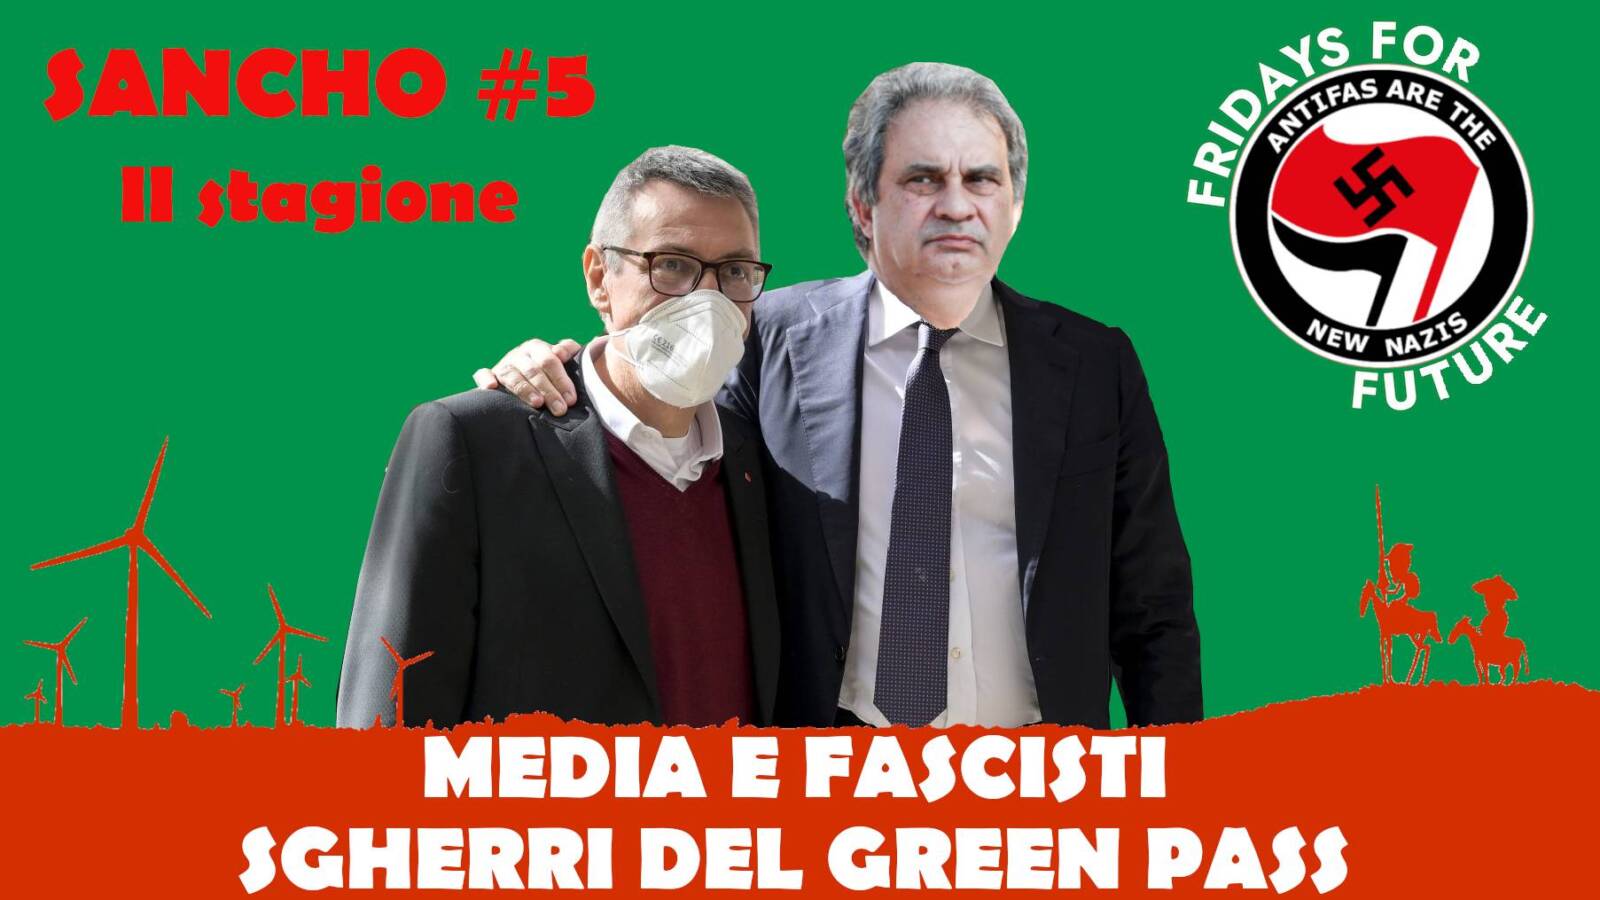 Sancho #5 II stagione – Fulvio Grimaldi – Media e fascisti sgherri del Green Pass